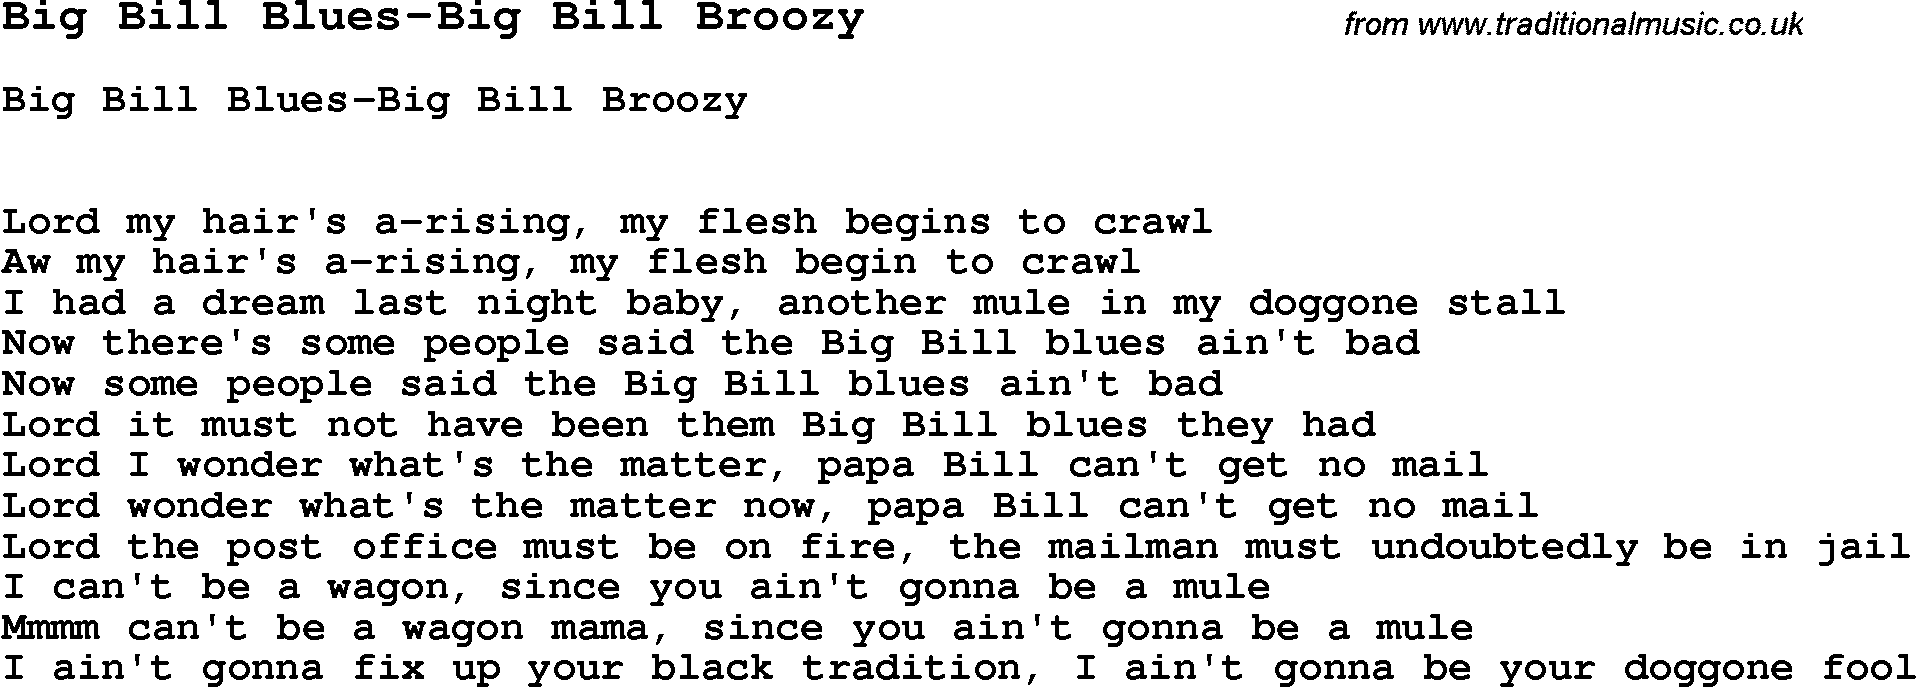 Skiffle Song Lyrics for Big Bill Blues-Big Bill Broozy.